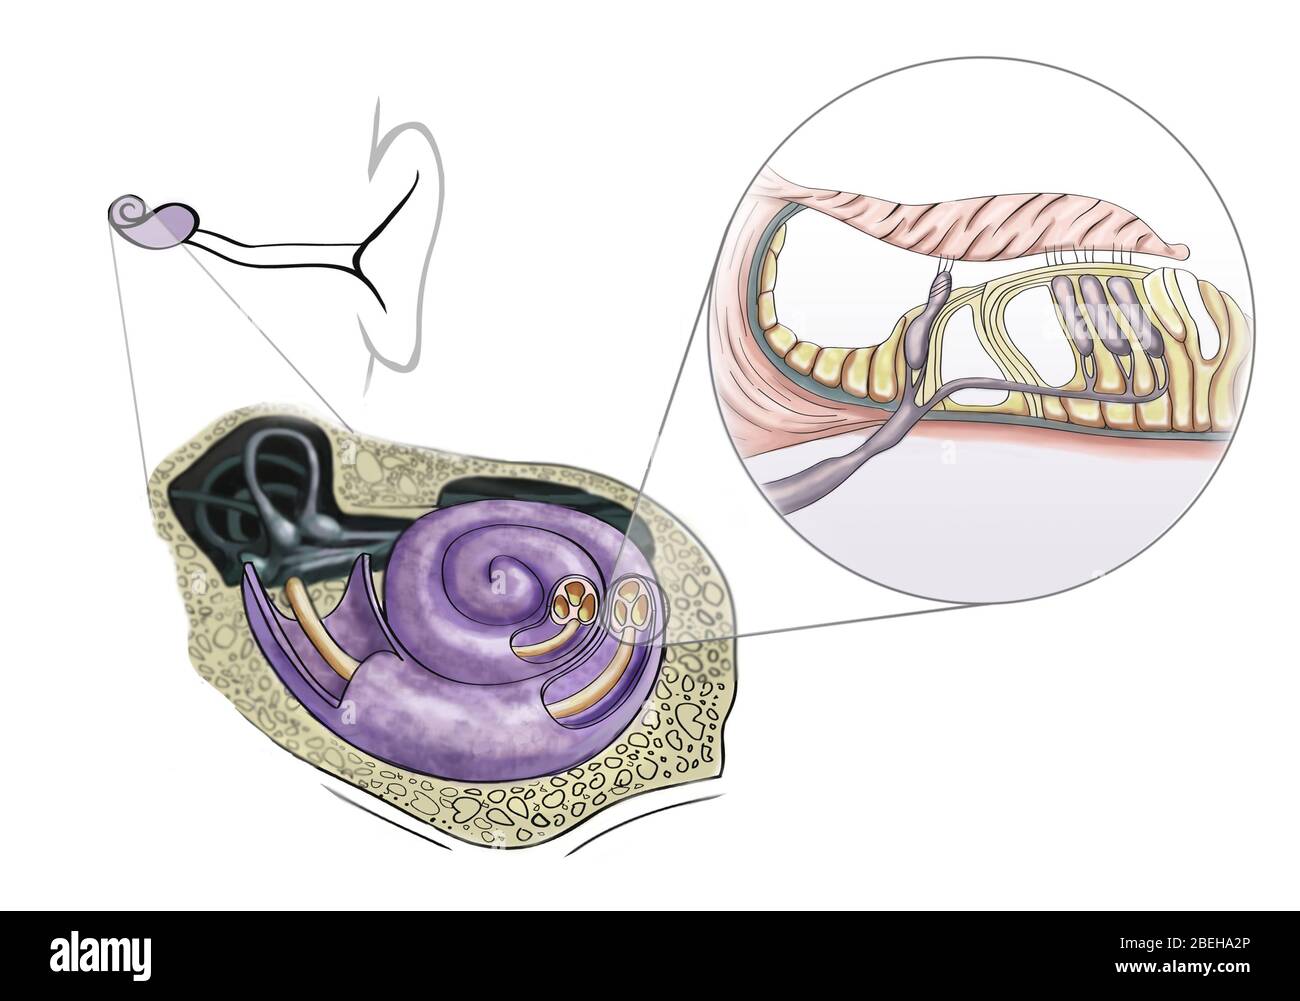 Ilustración de células ciliadas auditivas que se encuentran en el órgano espiral de Corti en la membrana basilar delgada de la cóclea del oído interno. Foto de stock